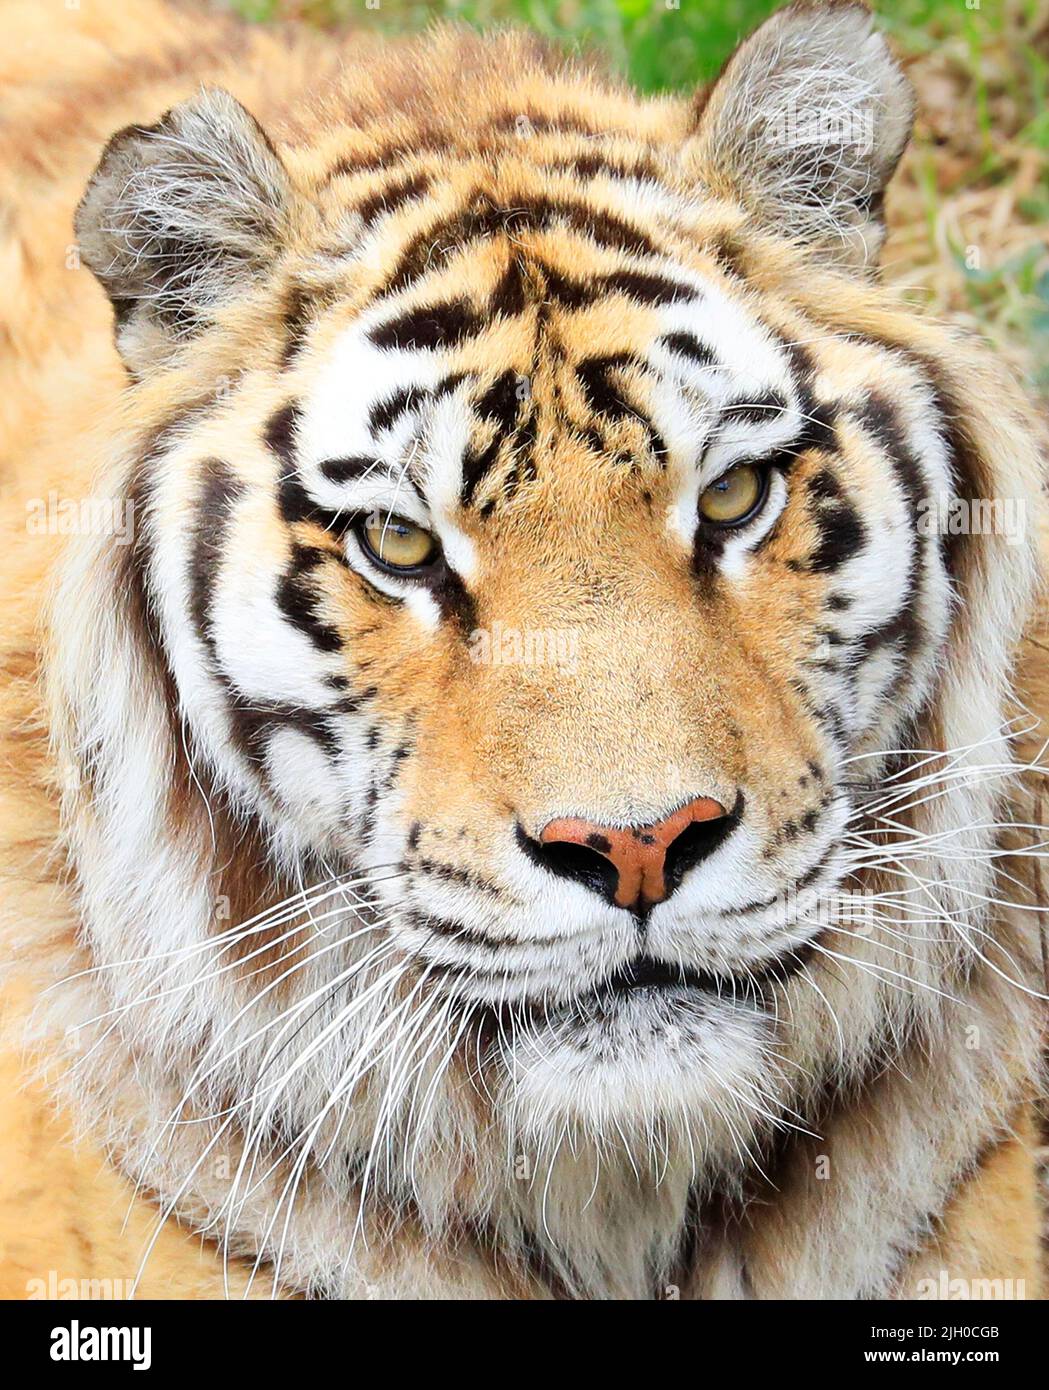 Amur Tiger portrait close-up Stock Photo